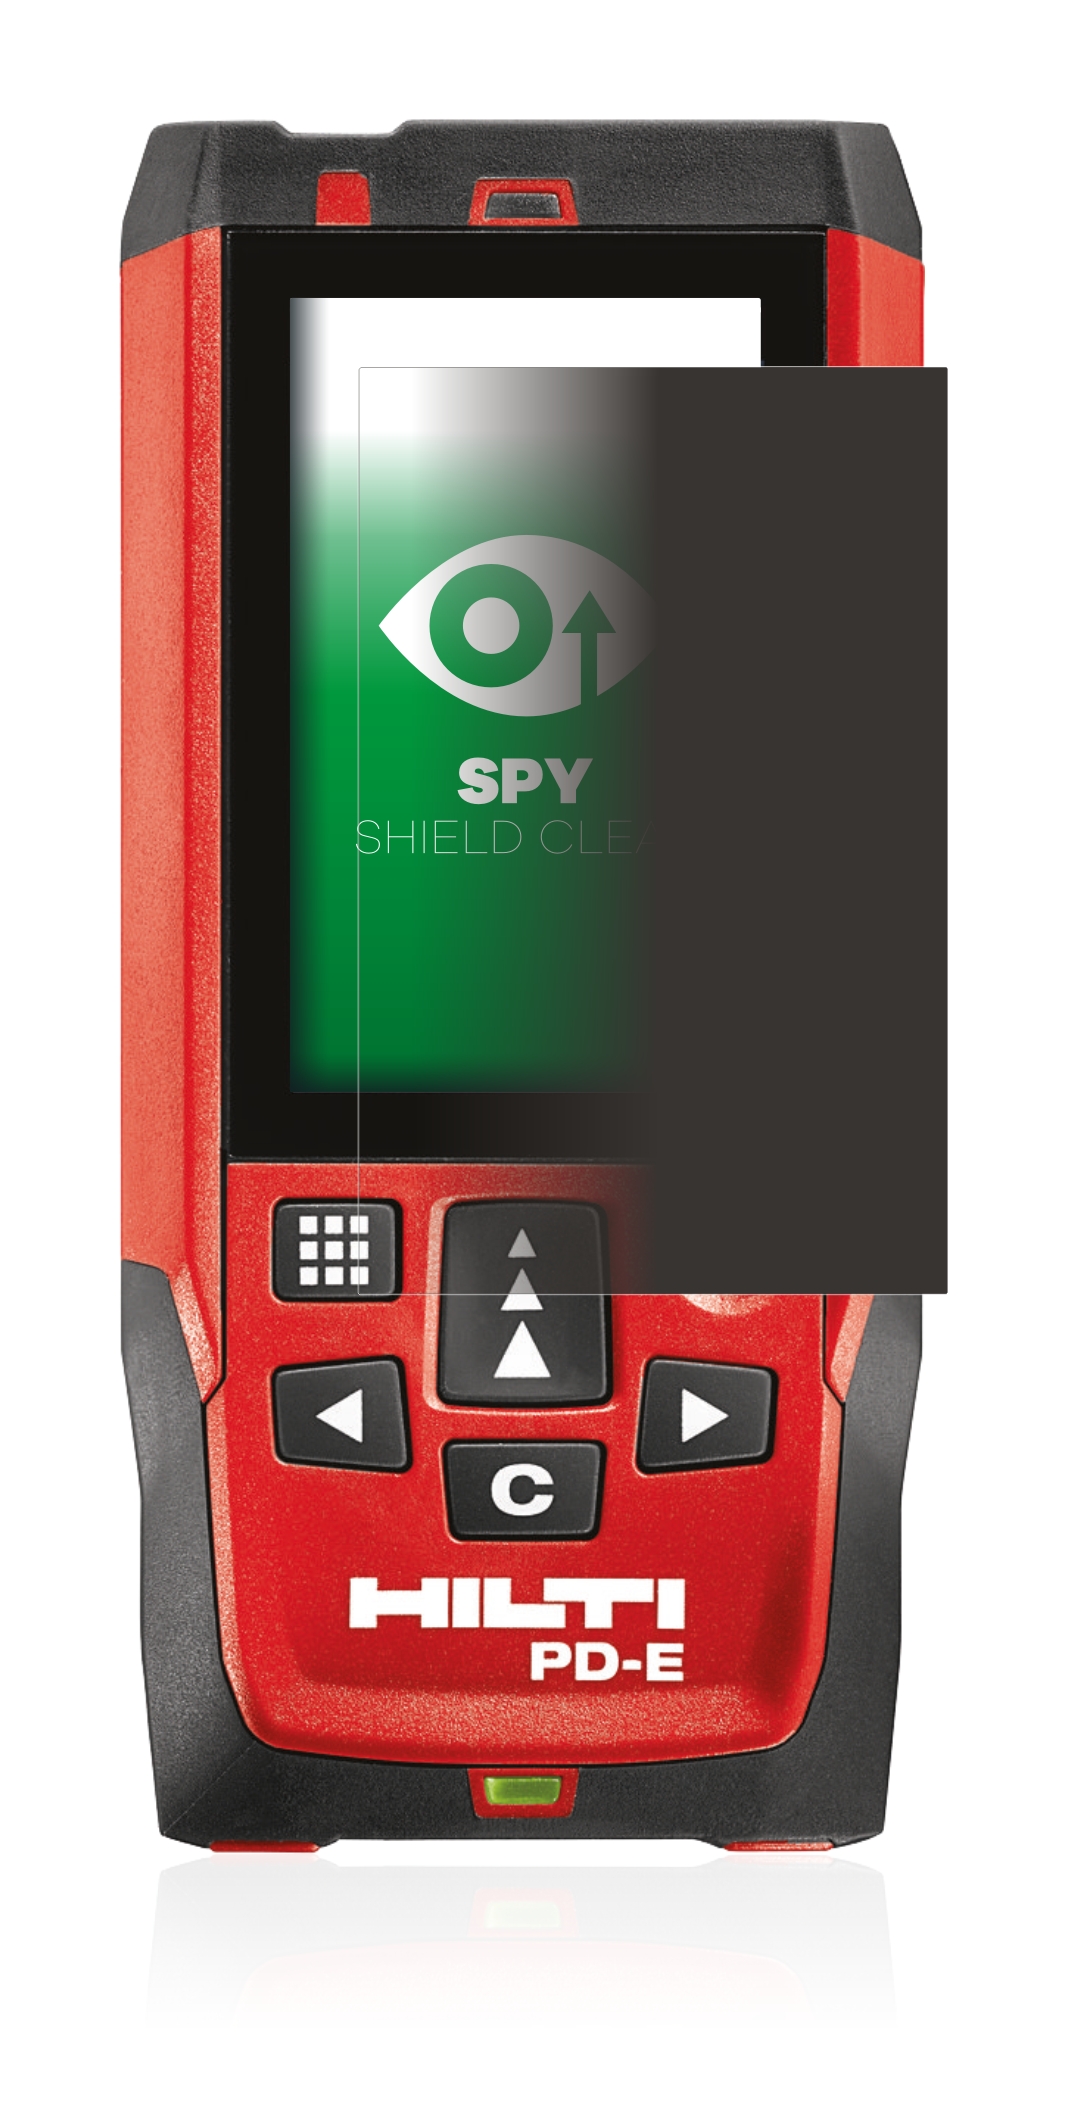 Hilti Anti Spy Privacy Screen Protector for Hilti PD-E Spy Shield Film 